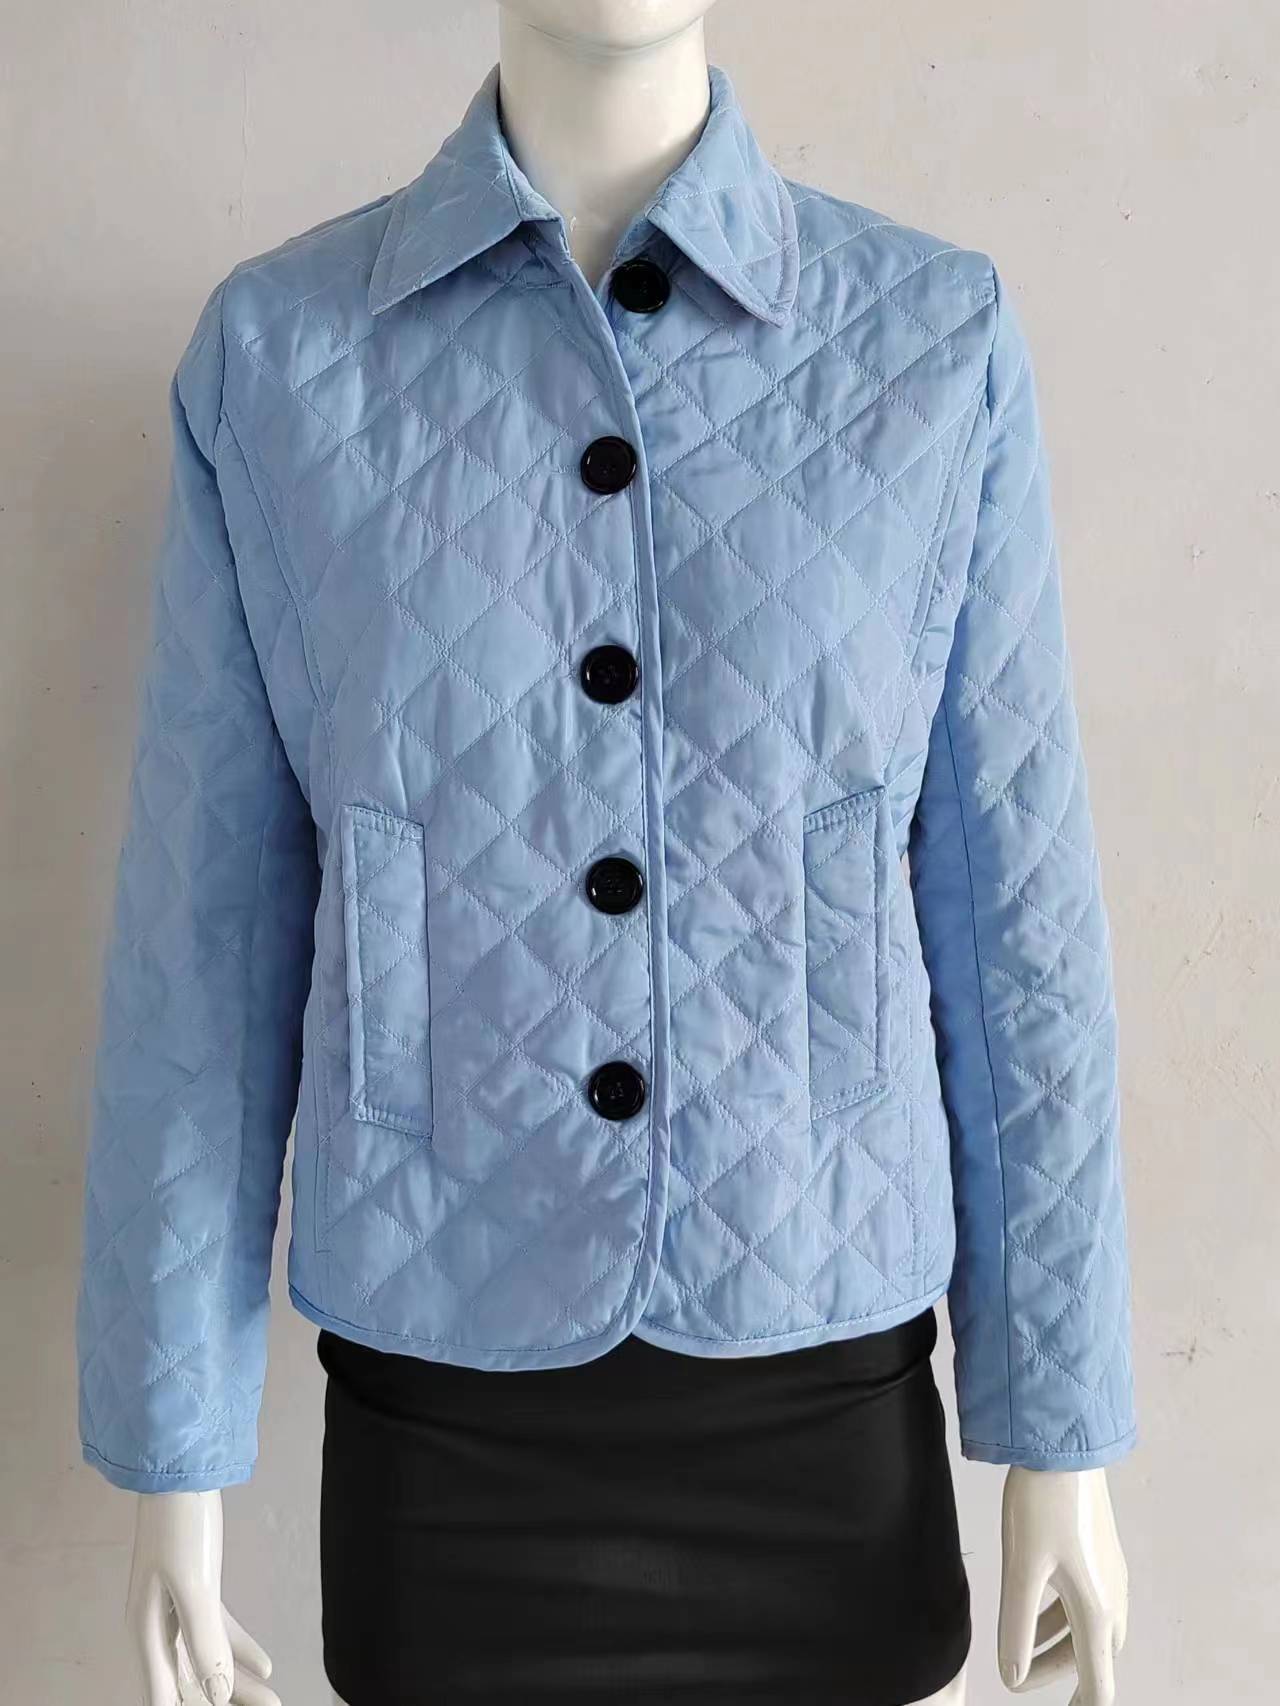 Fashionable Elegant Lapel Cotton-padded Jacket